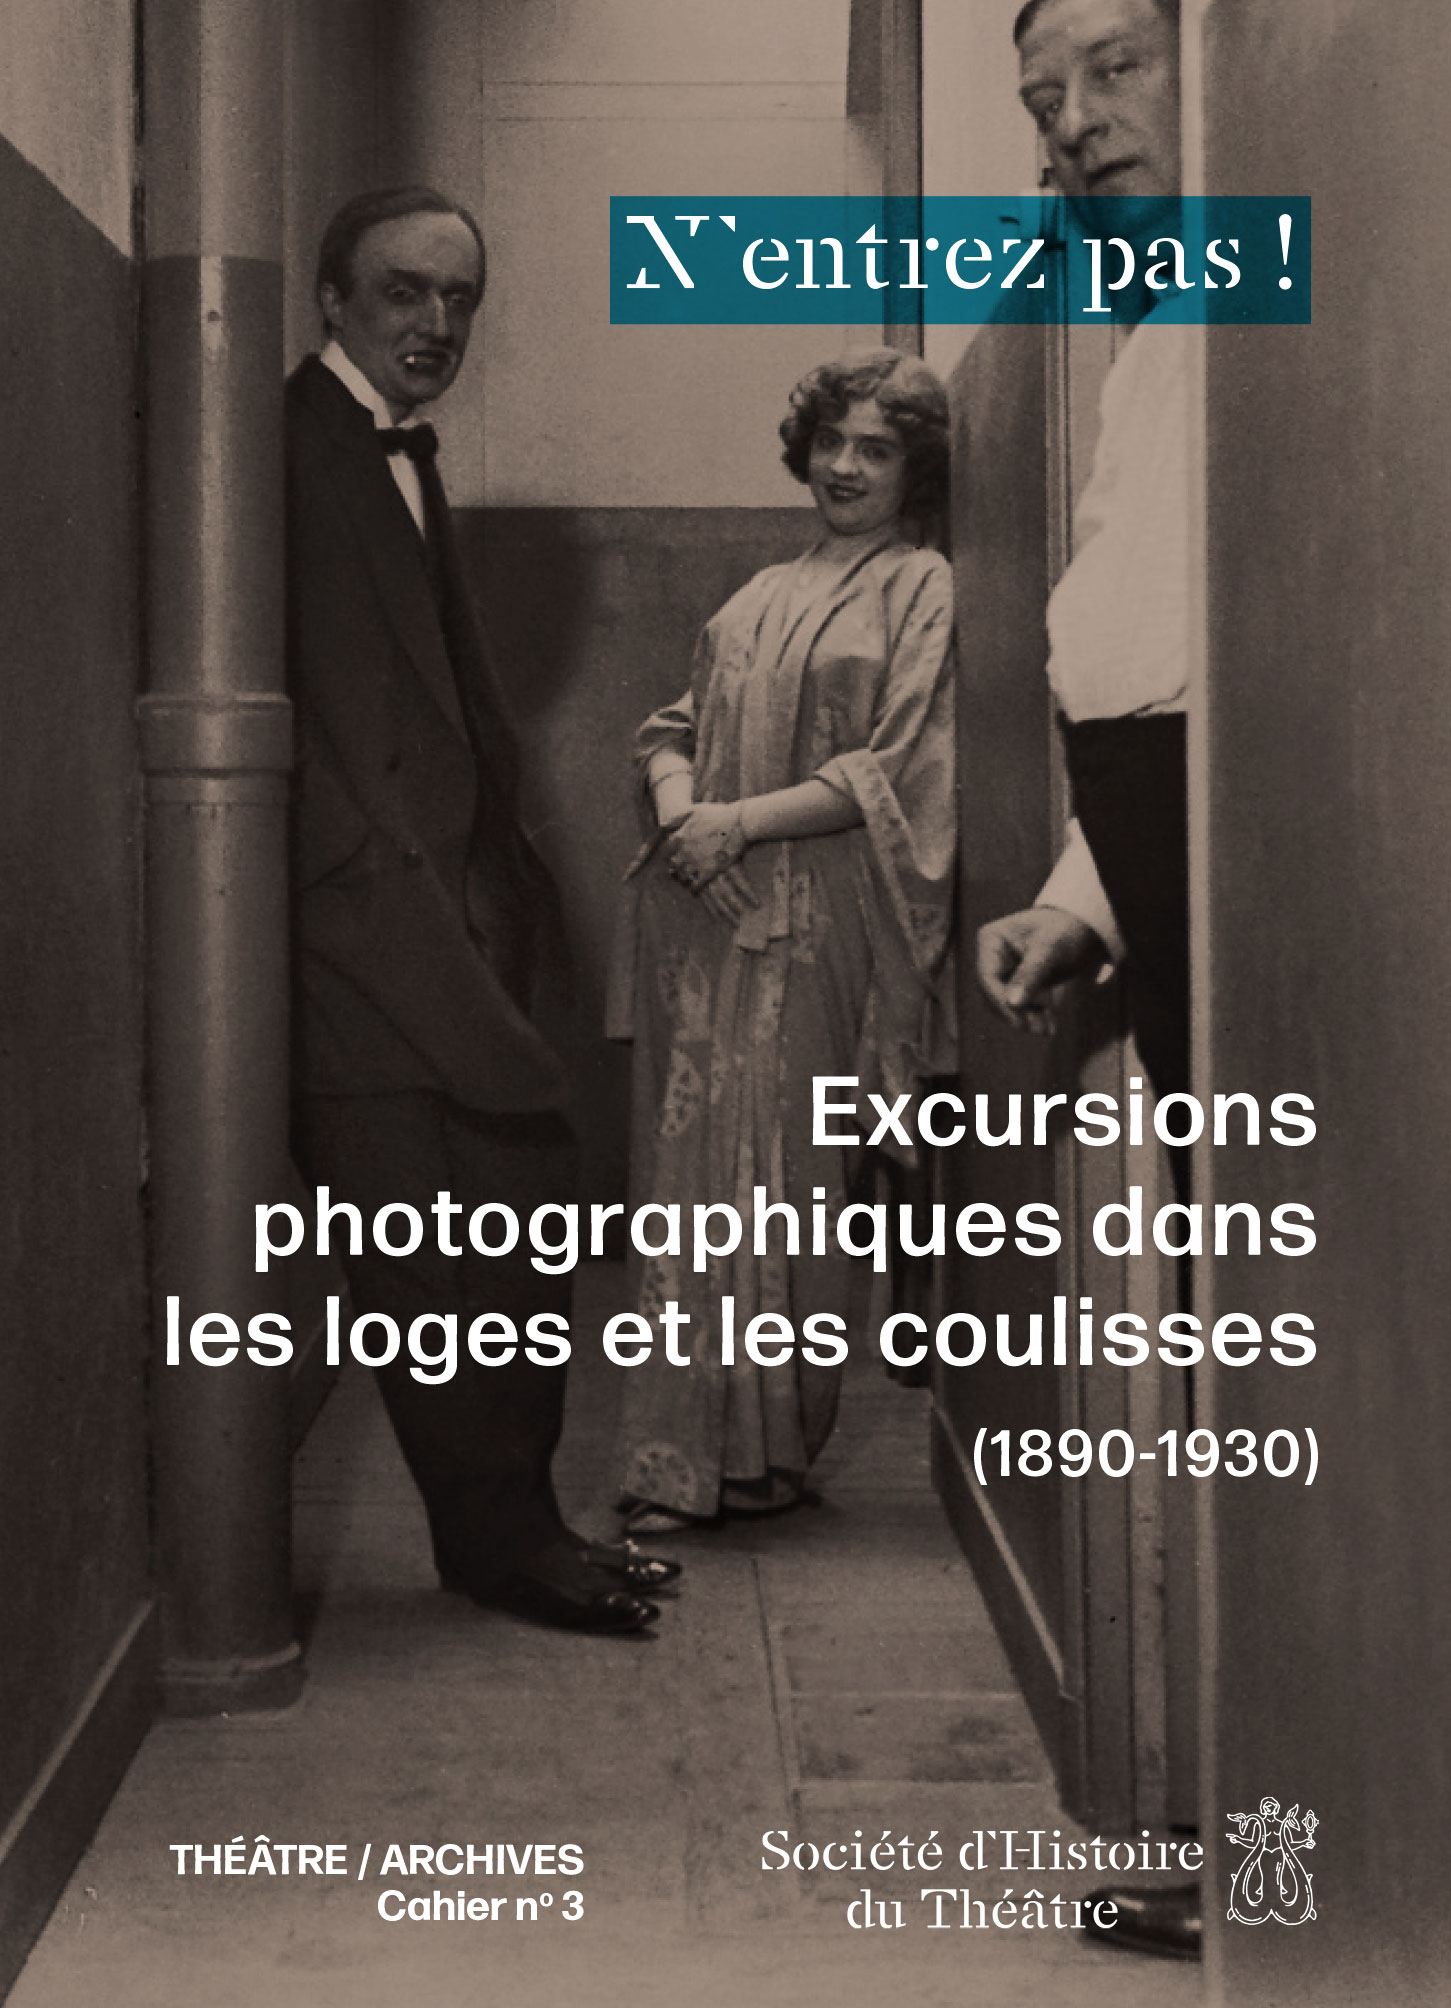 N’entrez pas ! Excursions photographiques dans les loges et les coulisses (1890-1930)